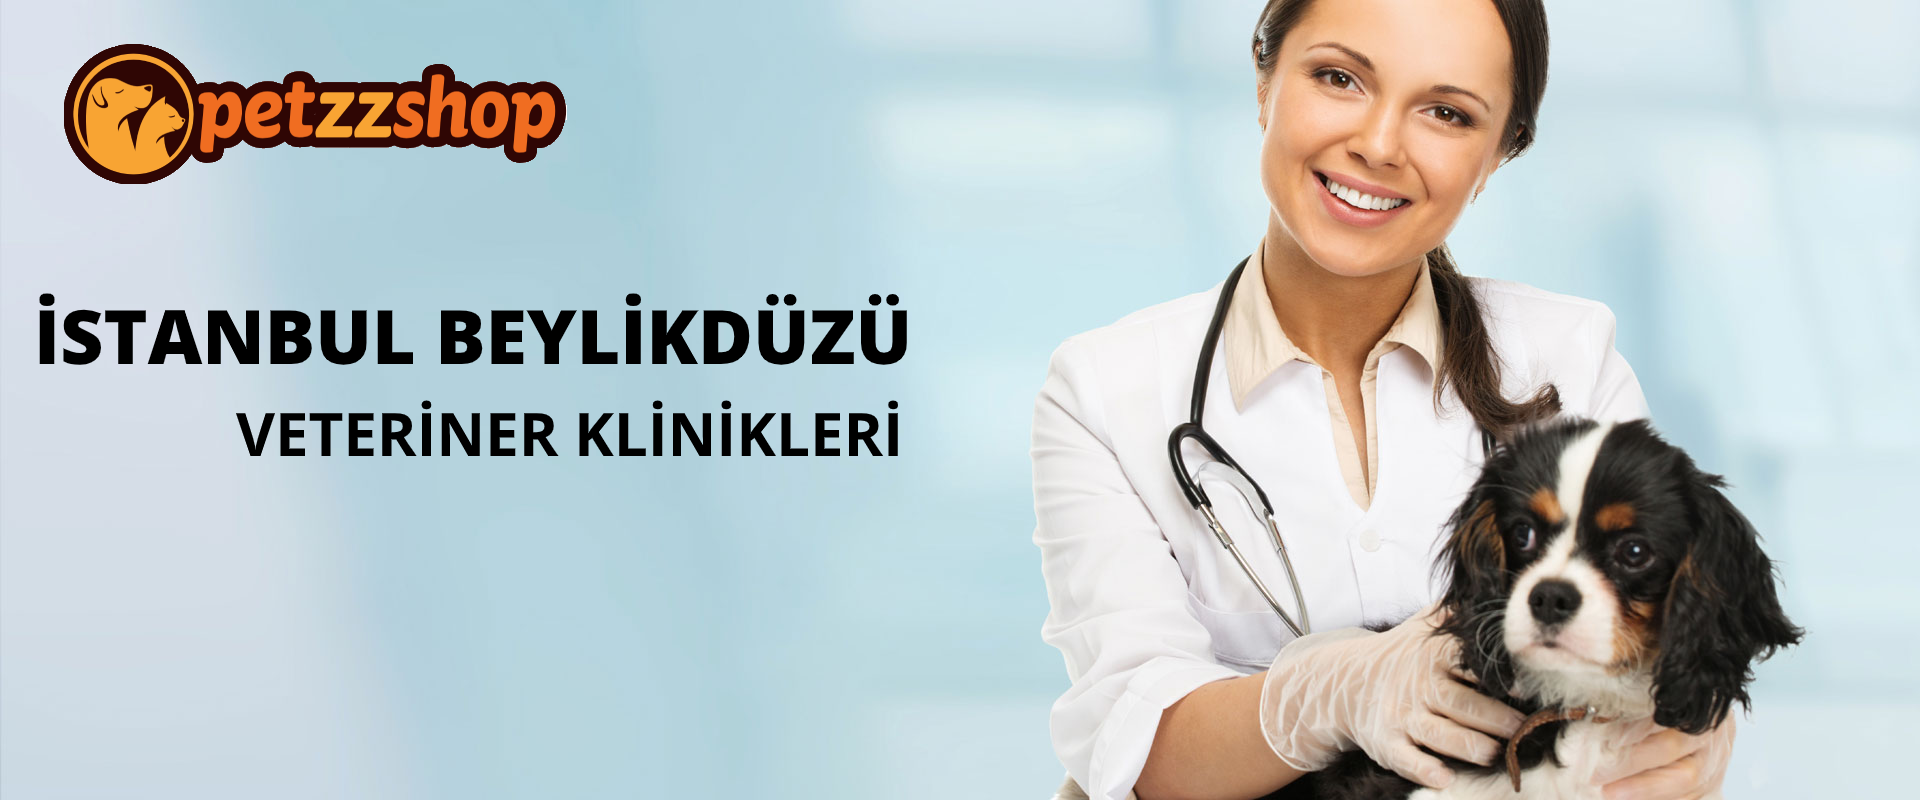 İstanbul Beylikdüzü Veteriner Klinikleri